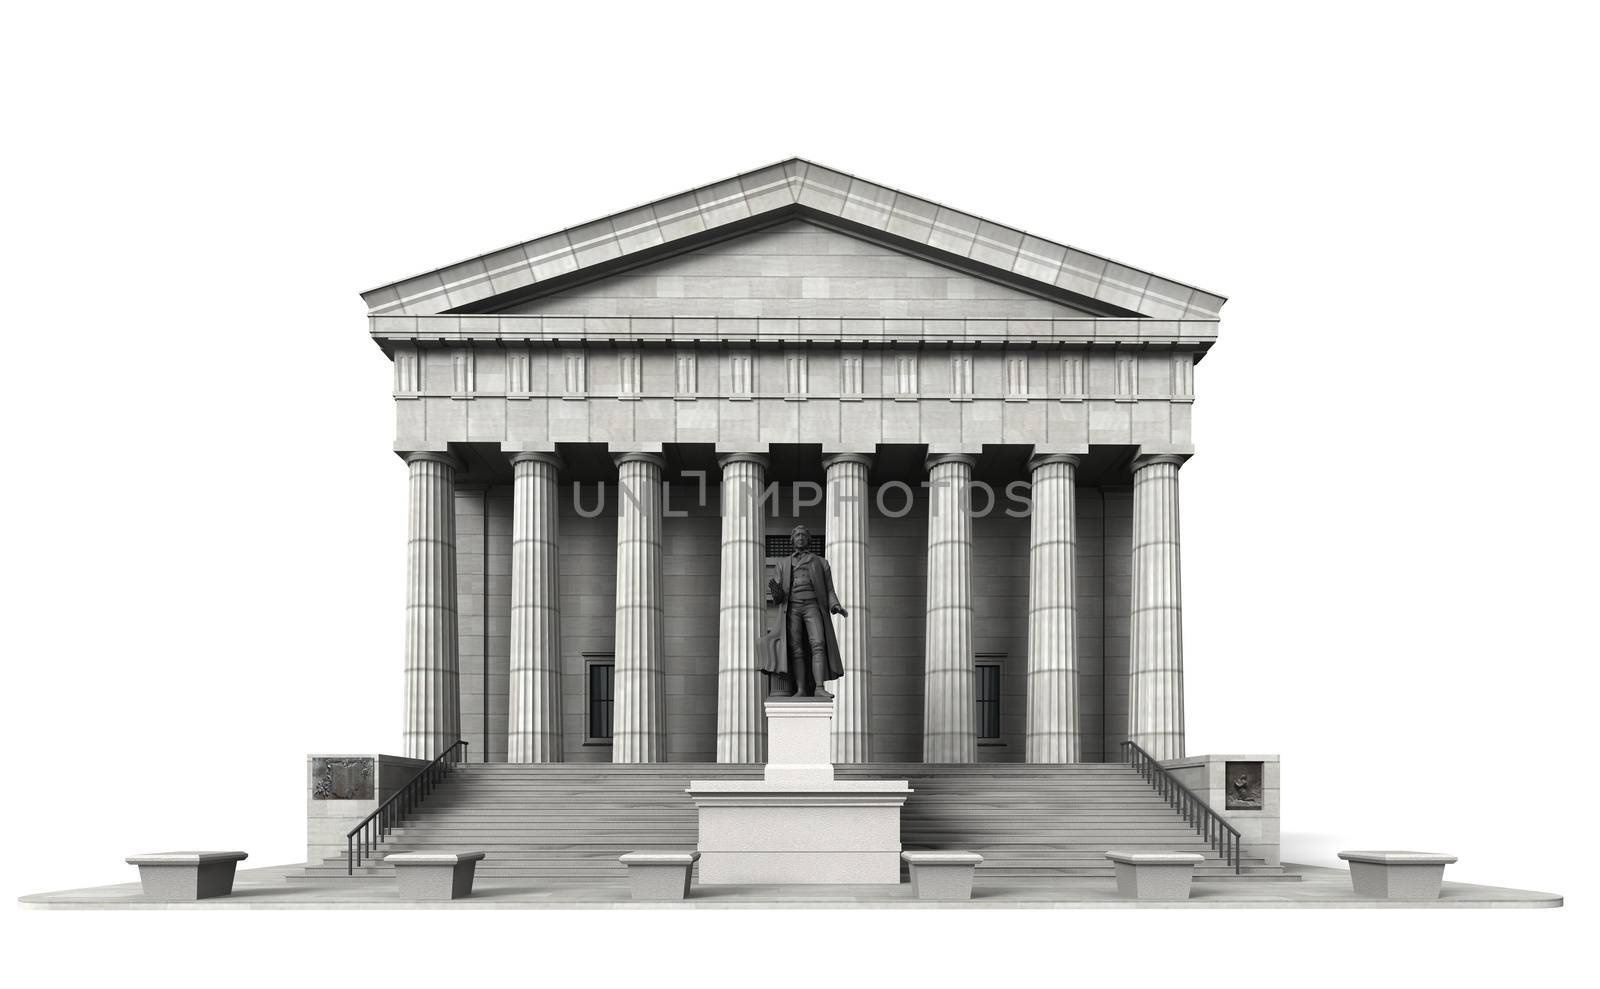 Federal Hall 4 by 3DAgentur